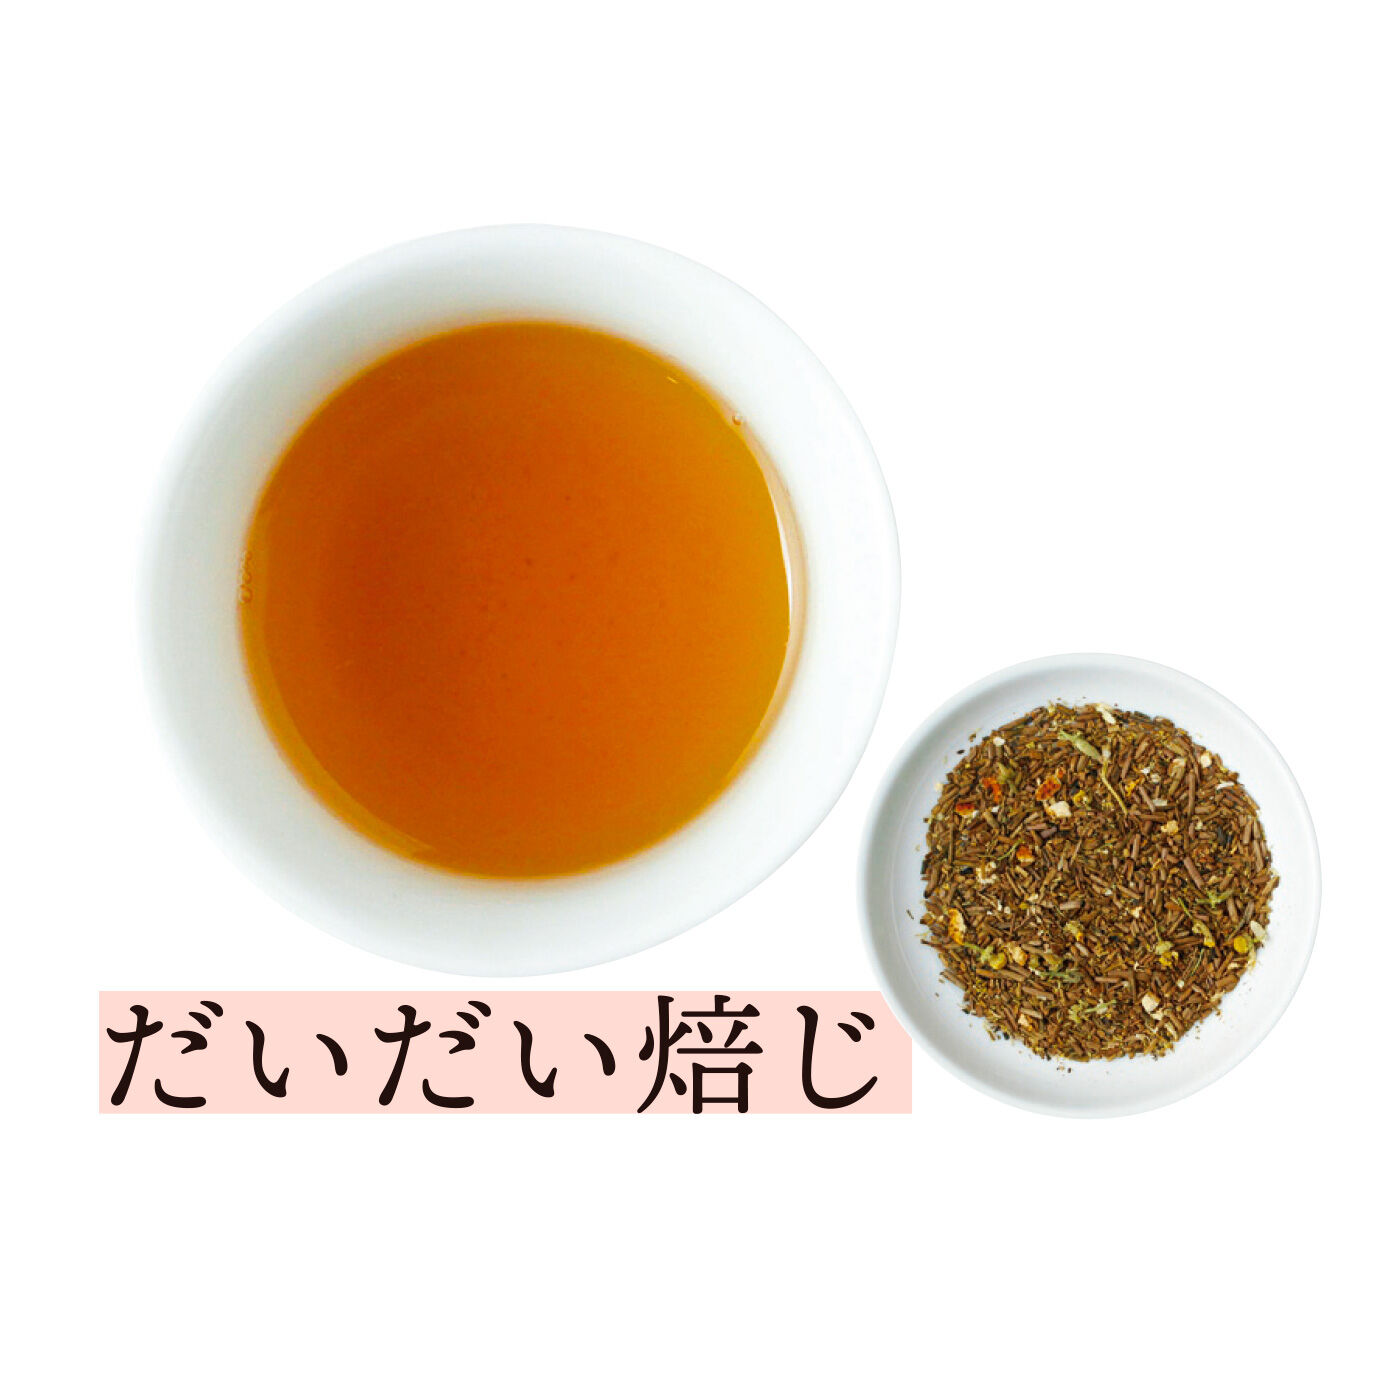 FELISSIMO PARTNERS|茶のみ仲間 袋茶で楽しむ日本のお茶紀行の会（12回予約）|棒ほうじ茶に橙（だいだい）の皮をブレンドし、香ばしさの中にさわやかな柑橘の香りをプラス。